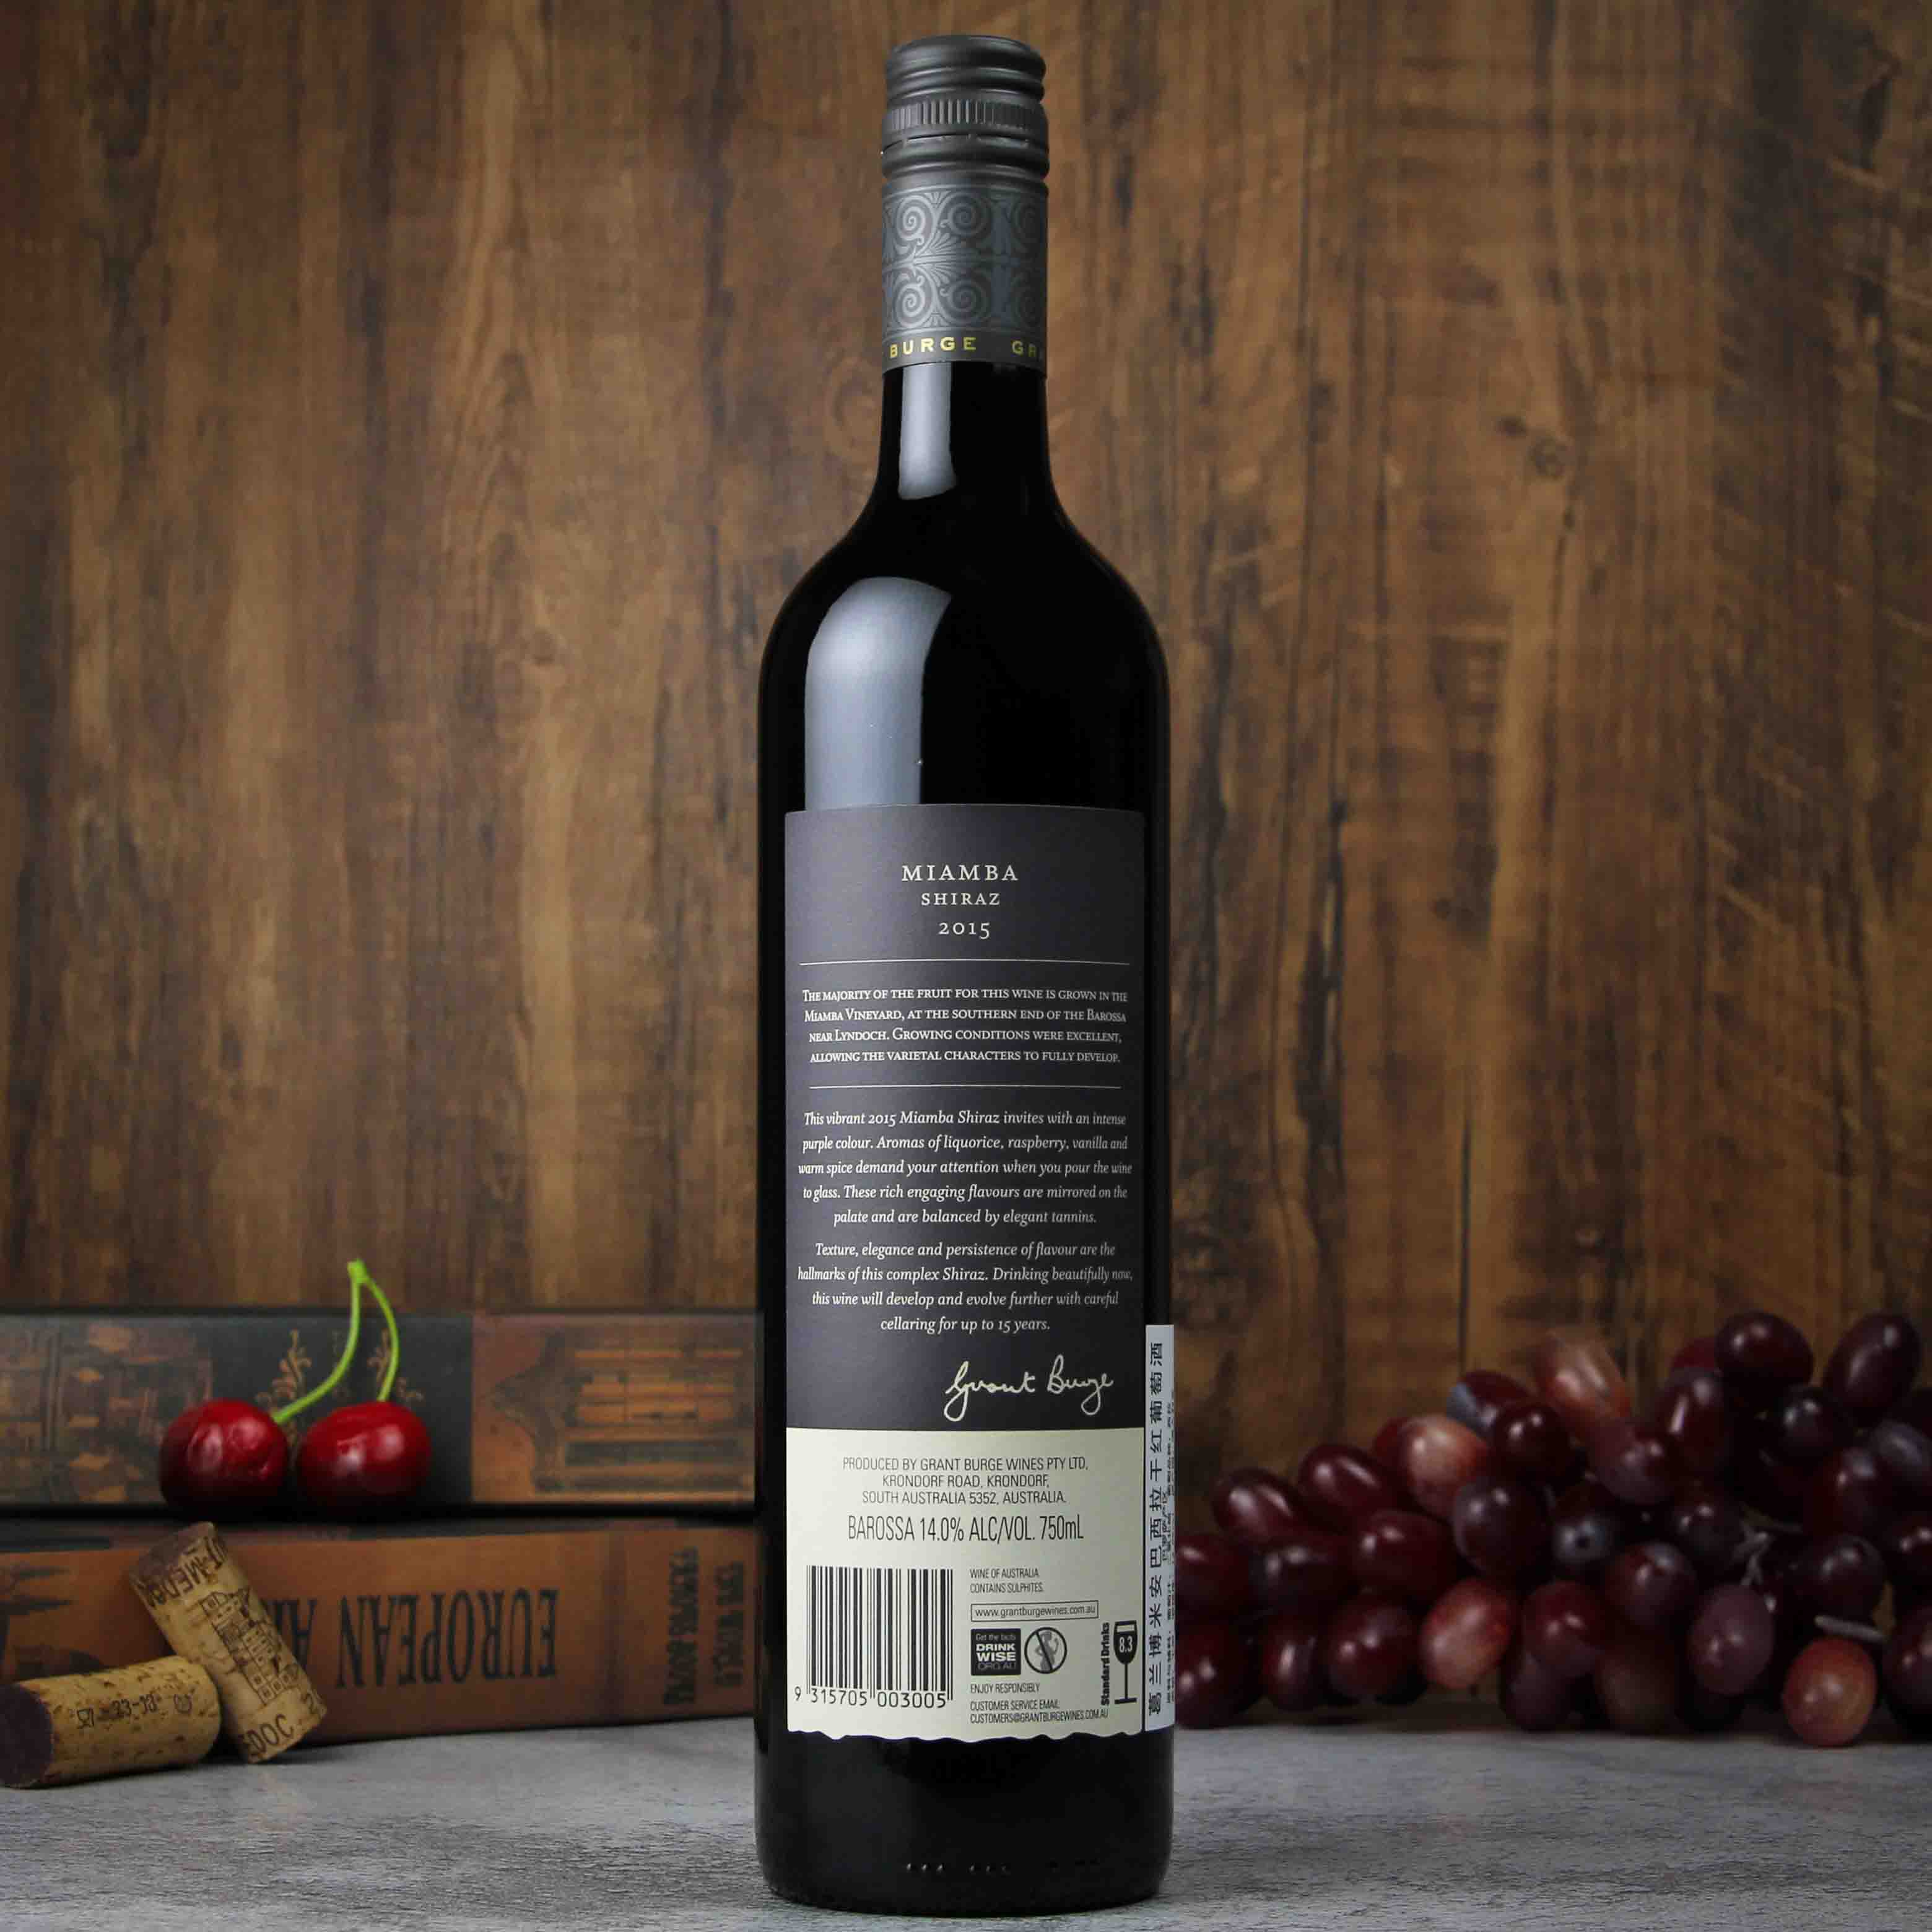 澳大利亚巴罗萨谷葛兰博米安巴西拉干红葡萄酒